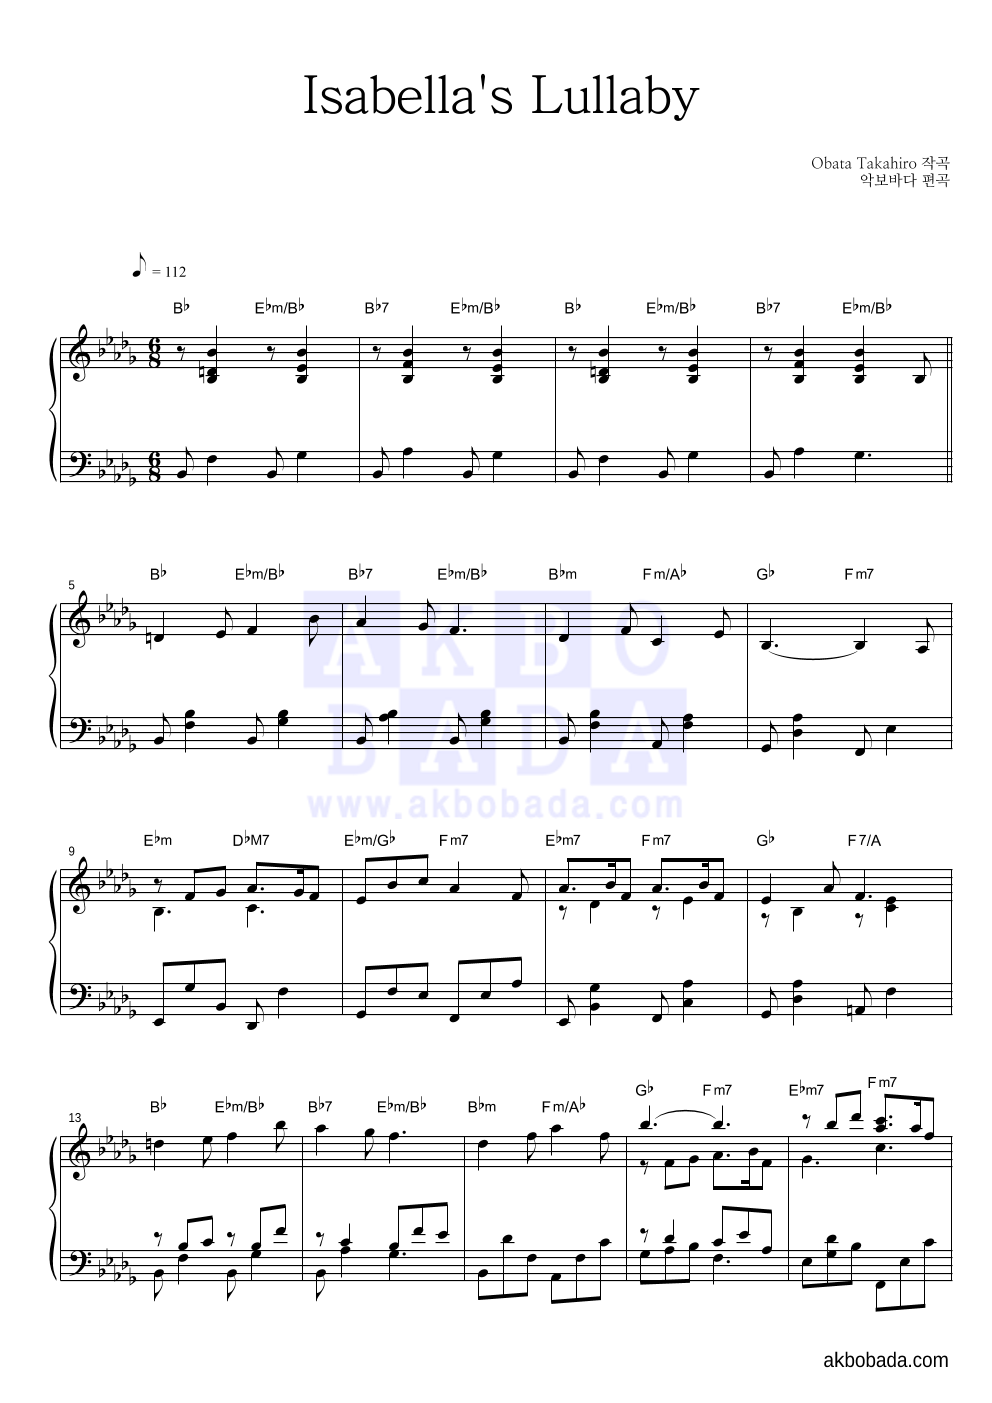 약속의 네버랜드 OST - Isabella's Lullaby 피아노 마스터 악보 